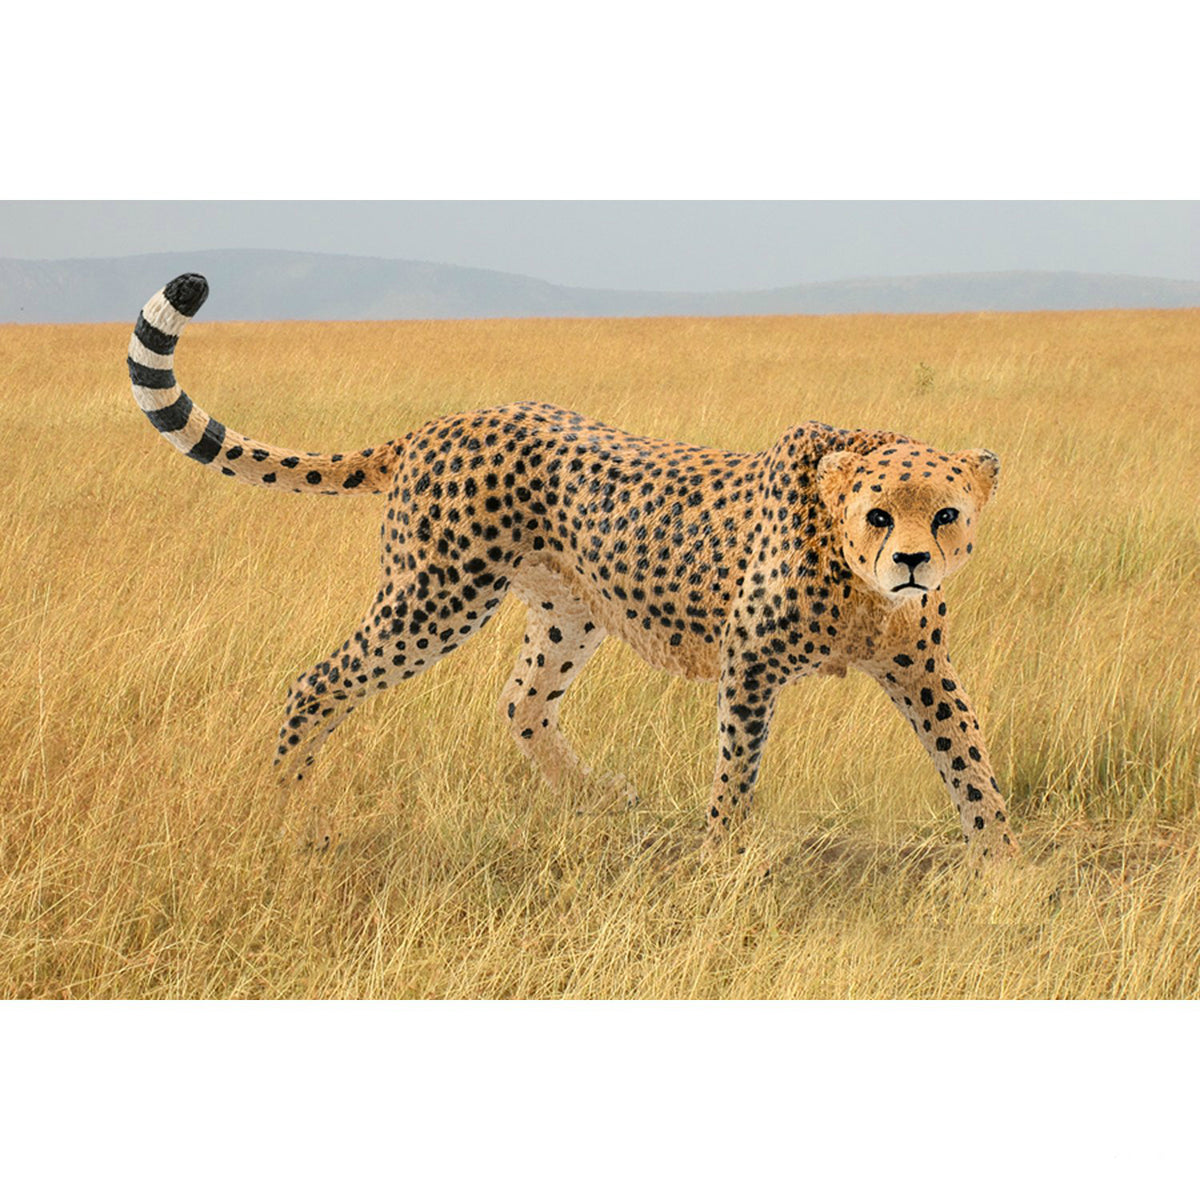 Schleich 14746 Figurine Female Cheetah Toy